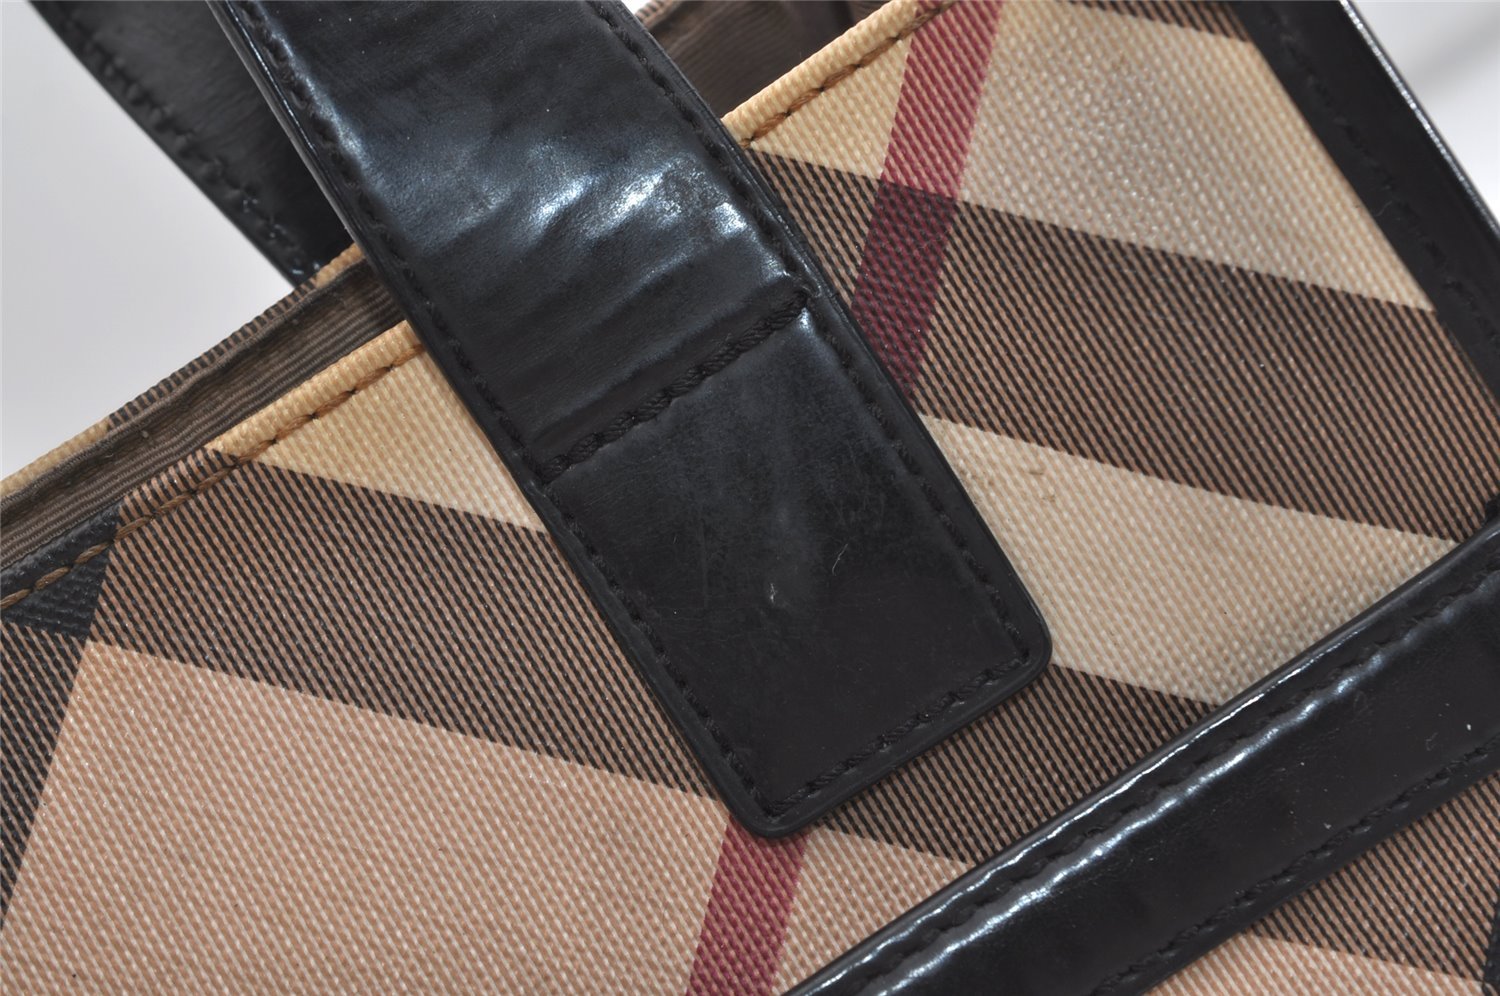 Authentic BURBERRY Vintage Nova Check PVC Leather Hand Bag Purse Beige 5526J